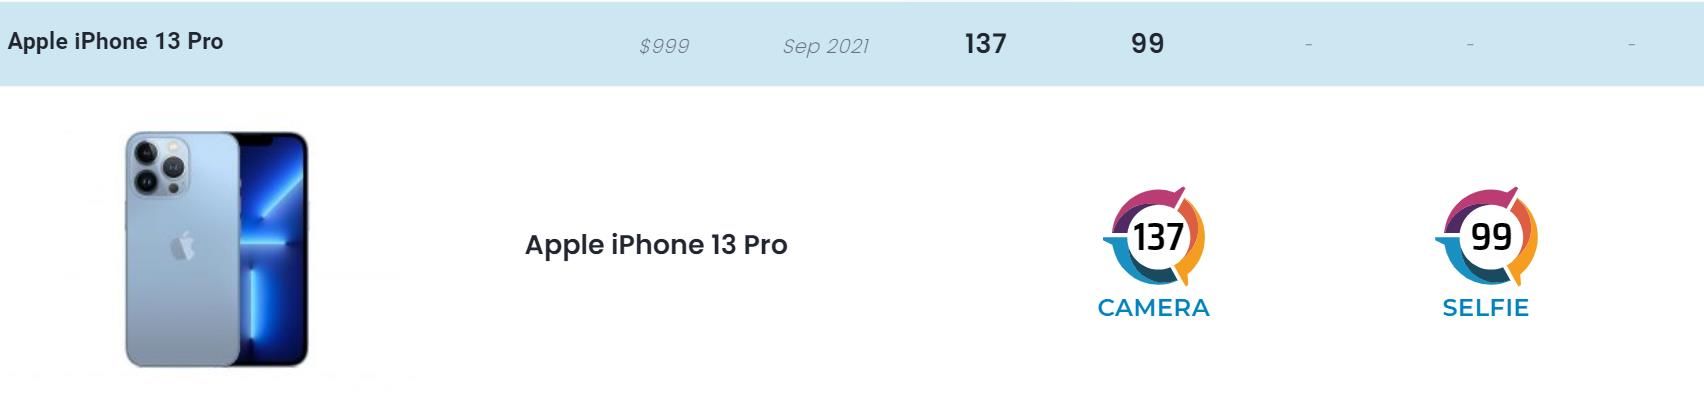 dxomDXOMark公布iPhone 13 Pro得分：137分，排名第四